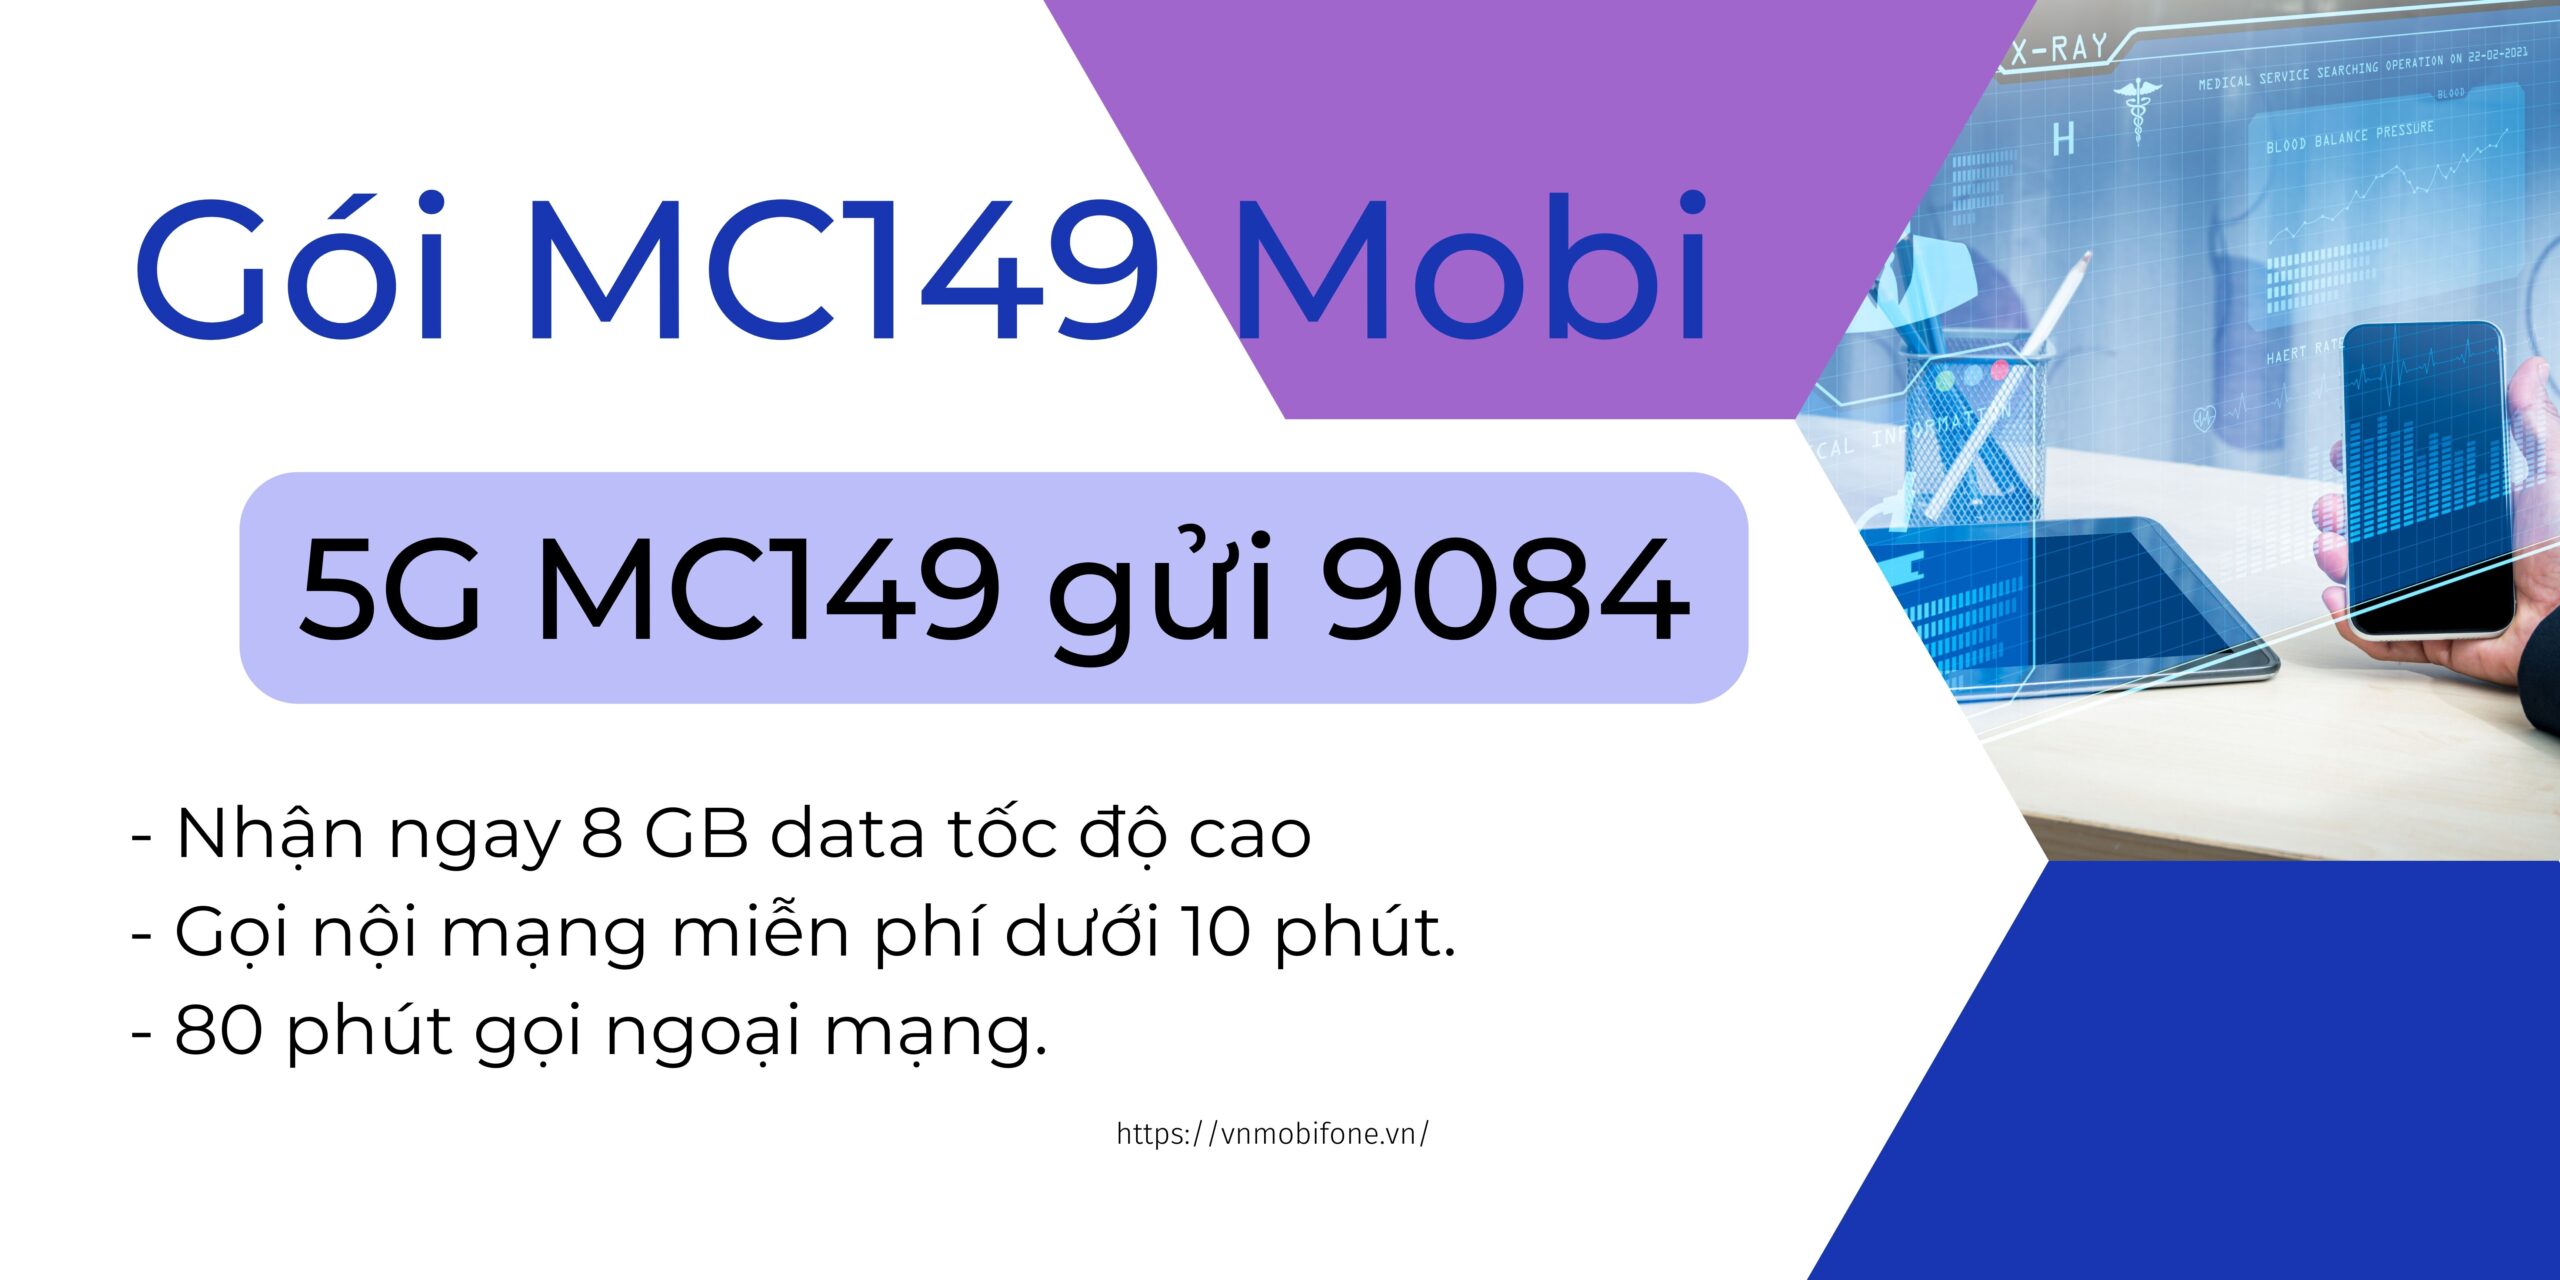 Gói MC149 Mobi